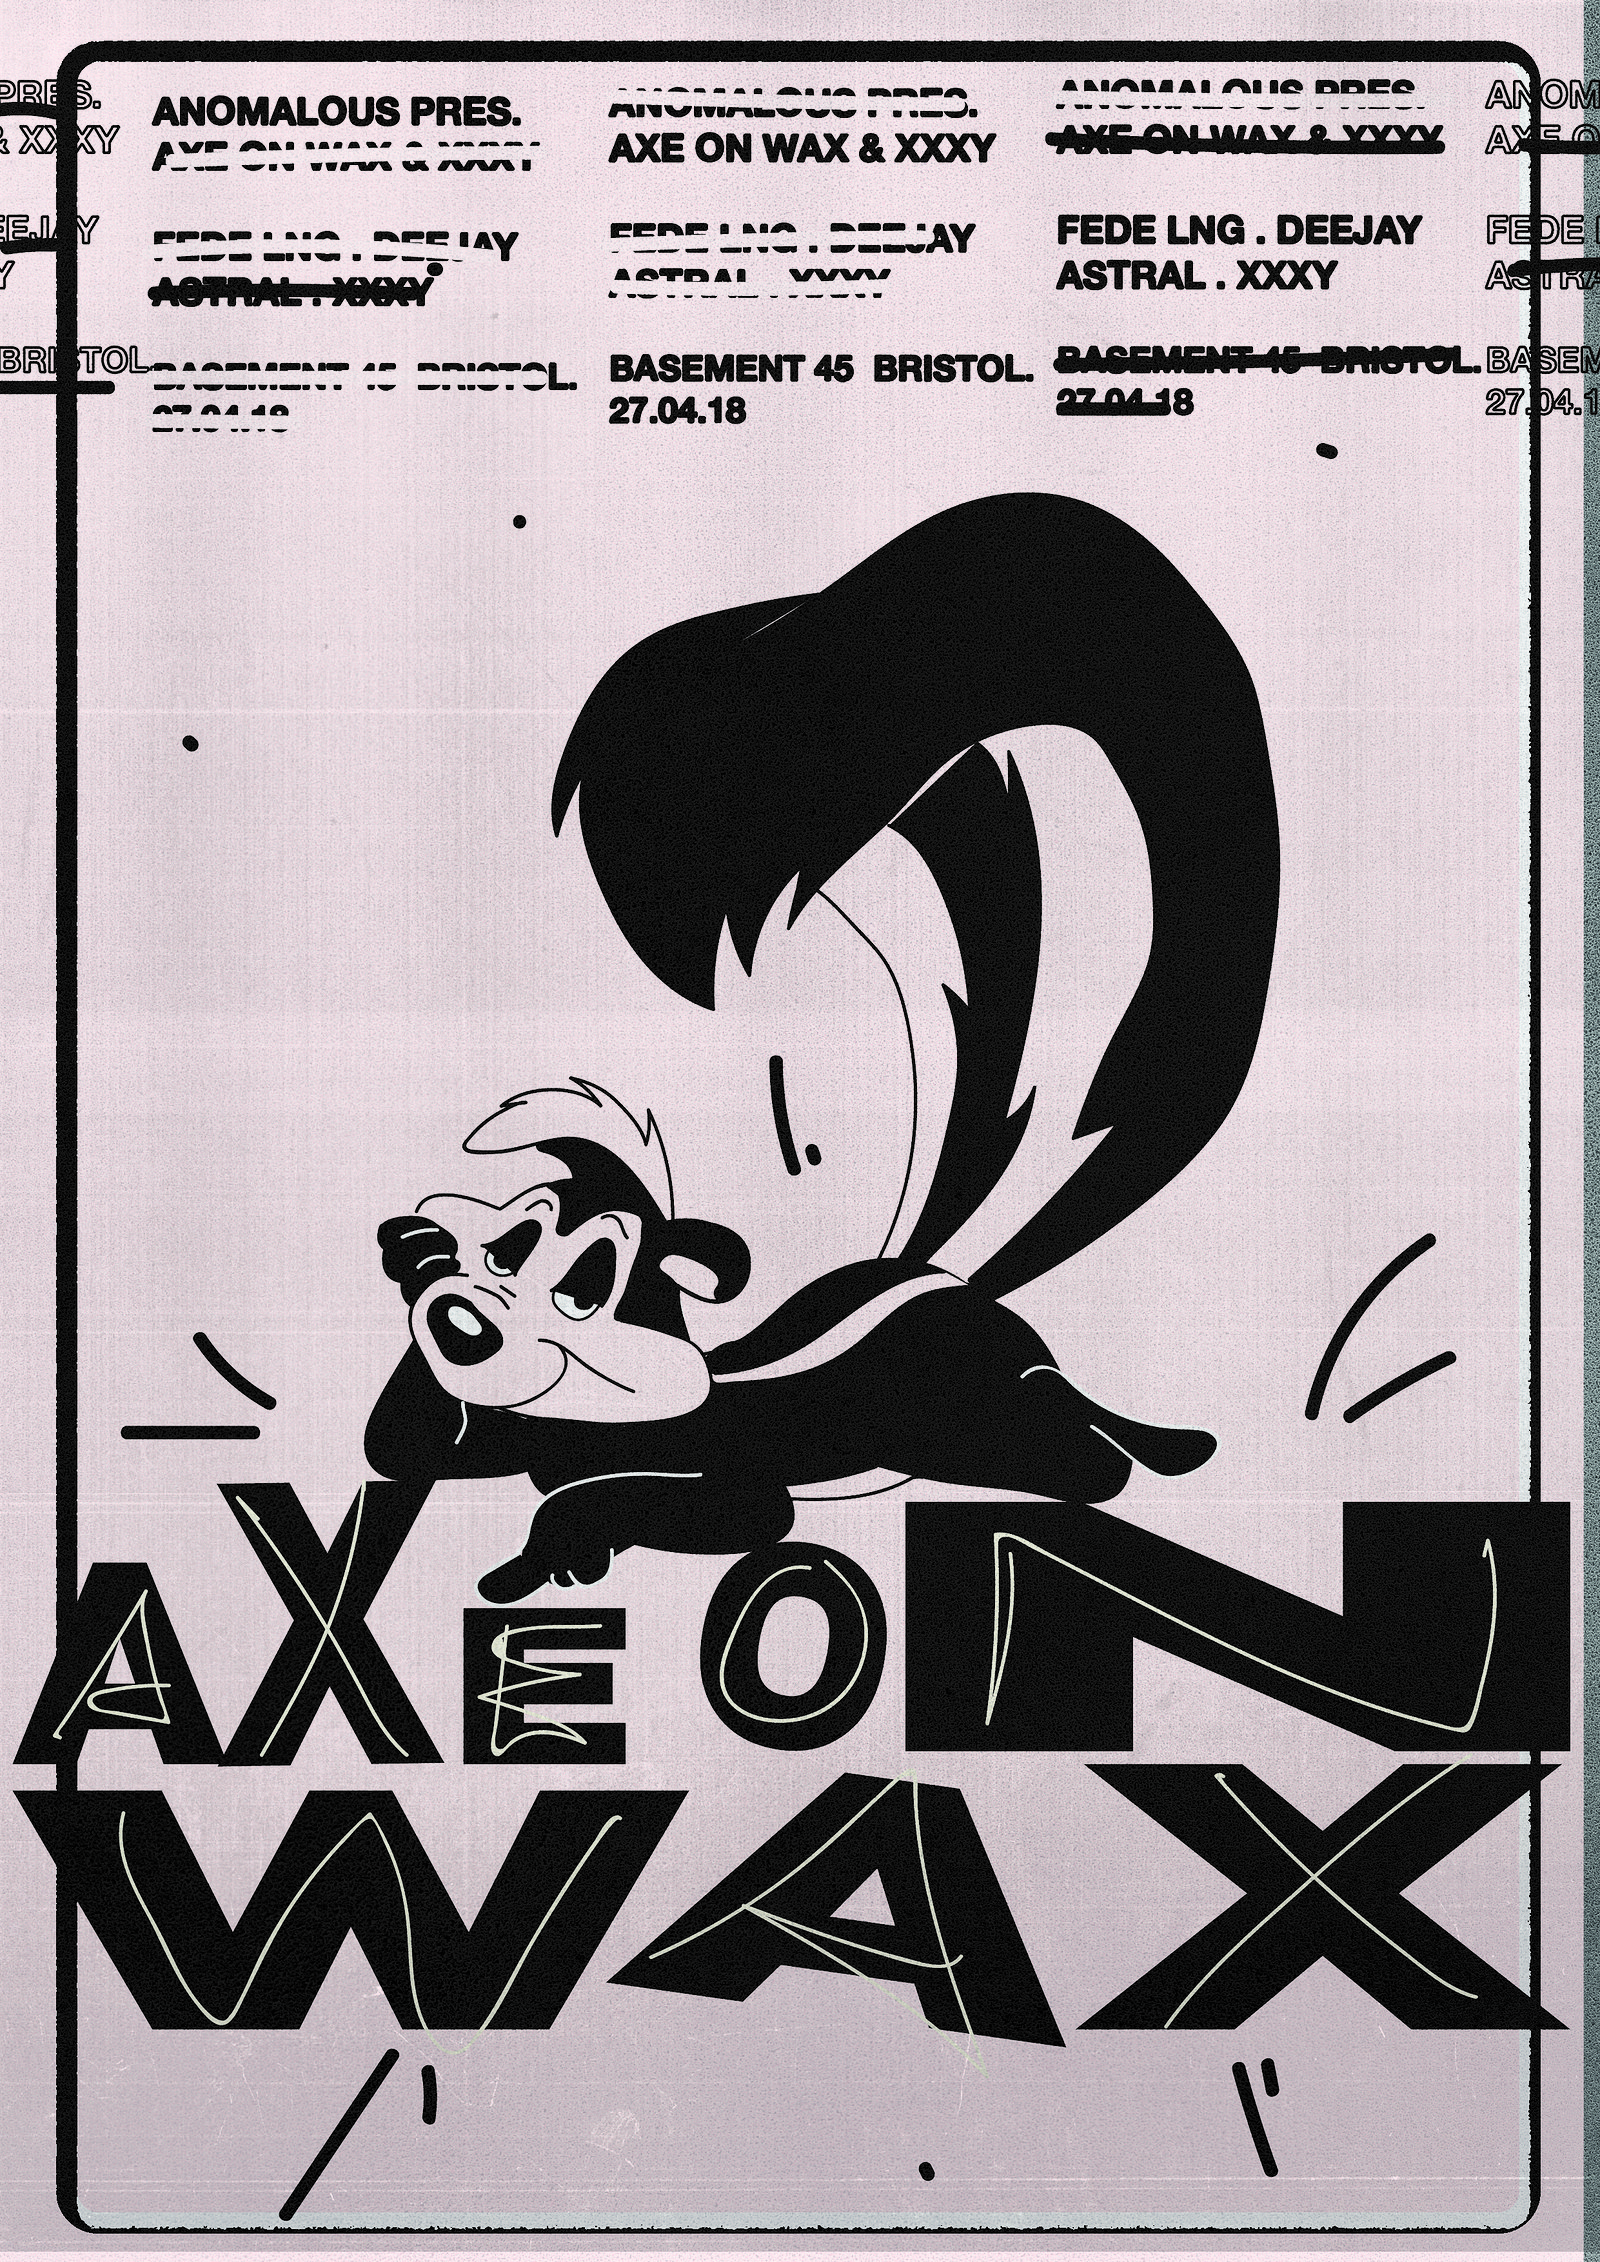 Anomalous Presents: Axe on Wax & XXXY at Basement 45